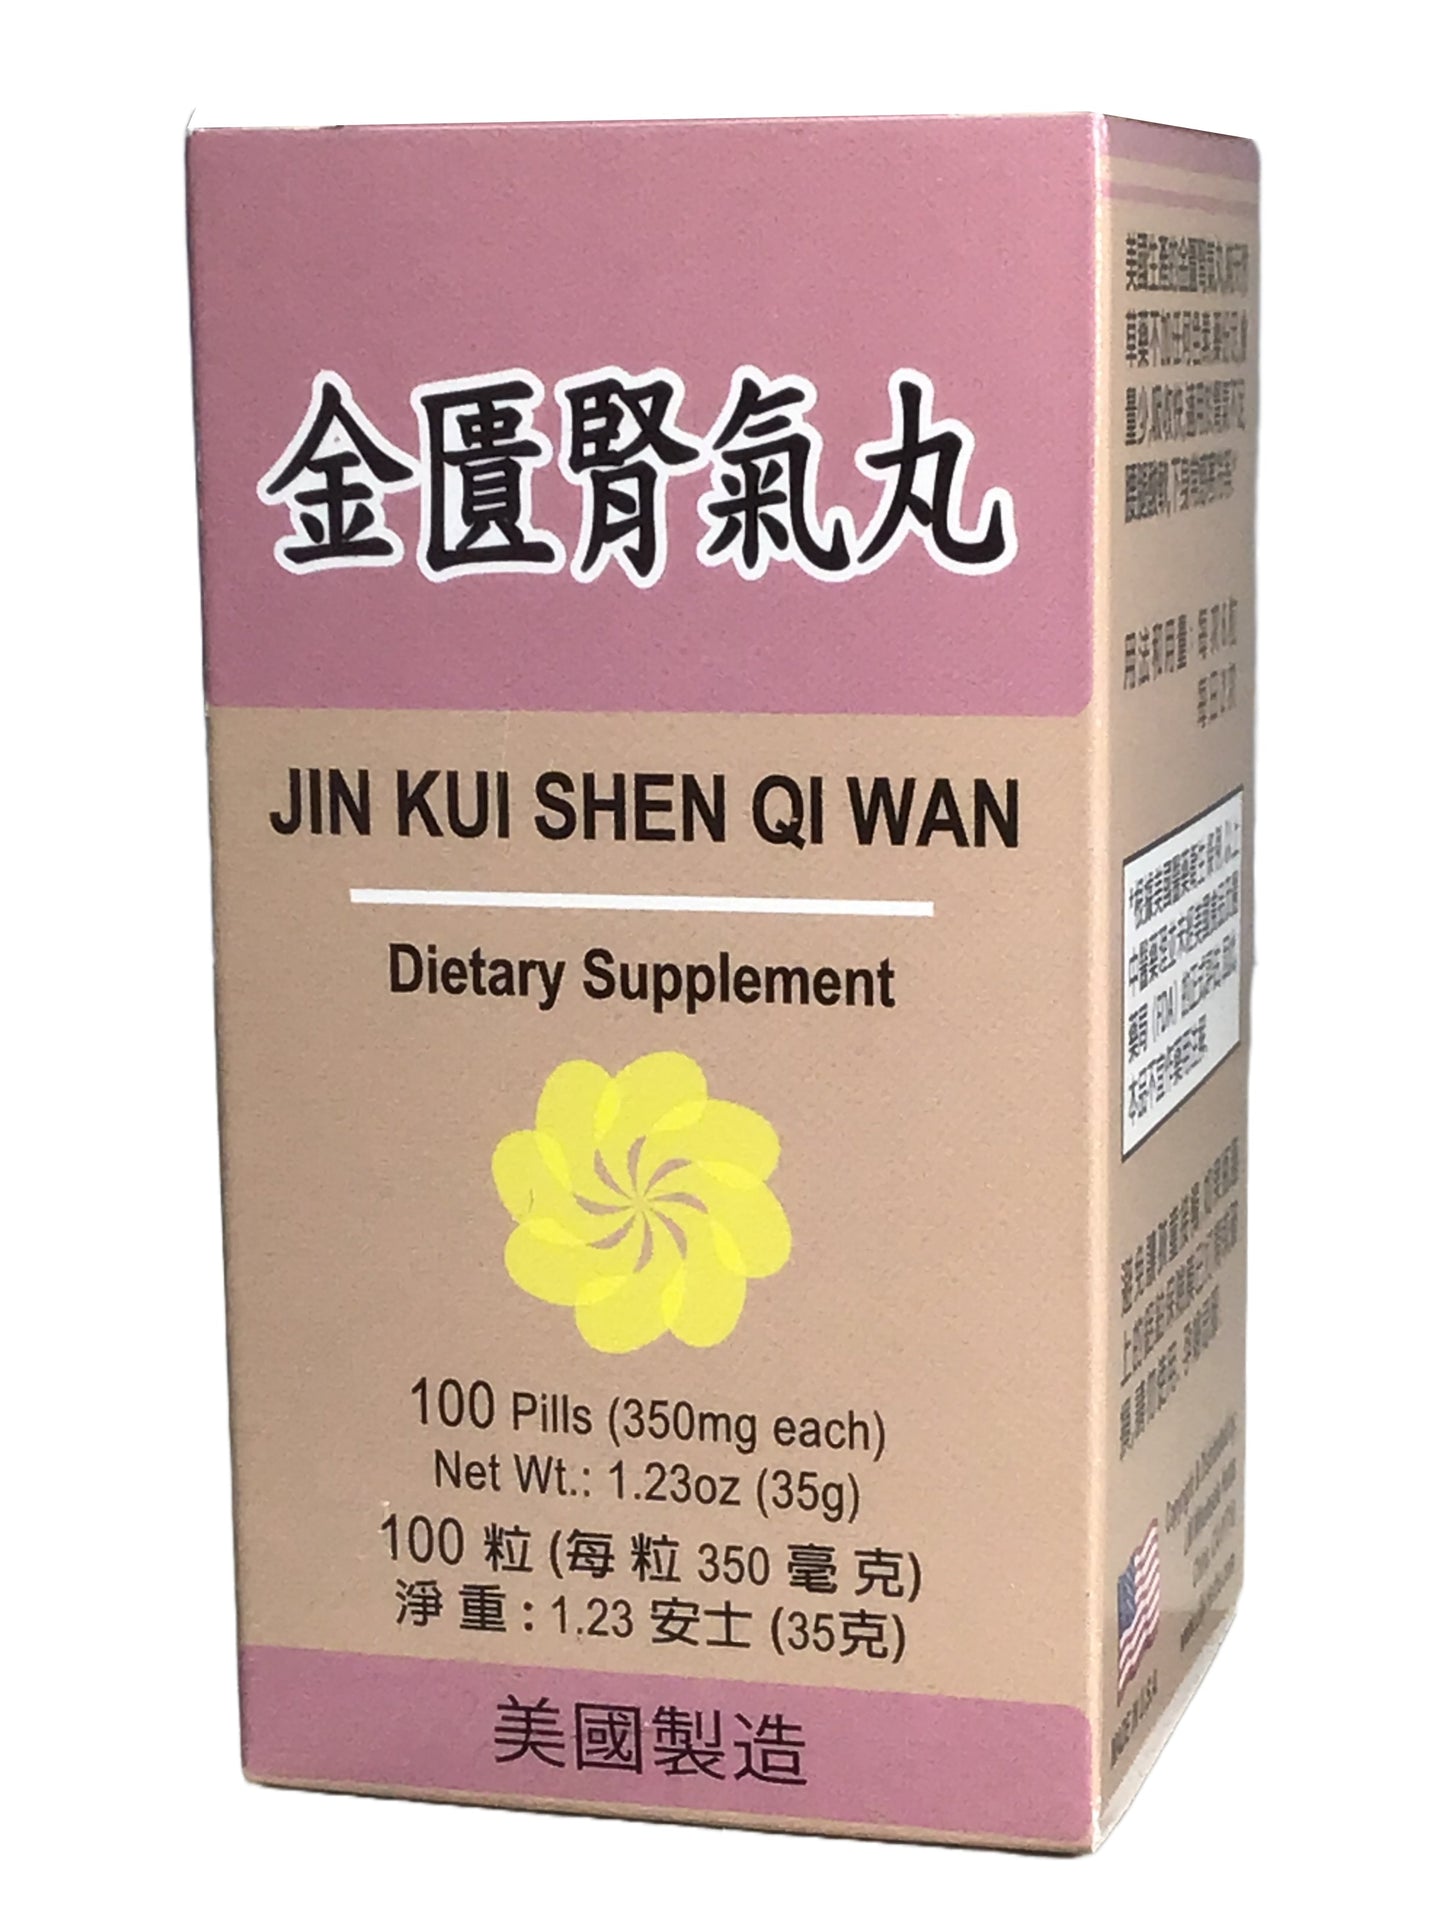 Jin Kui Shen Qi Wan 金匱腎氣丸 100 Pills